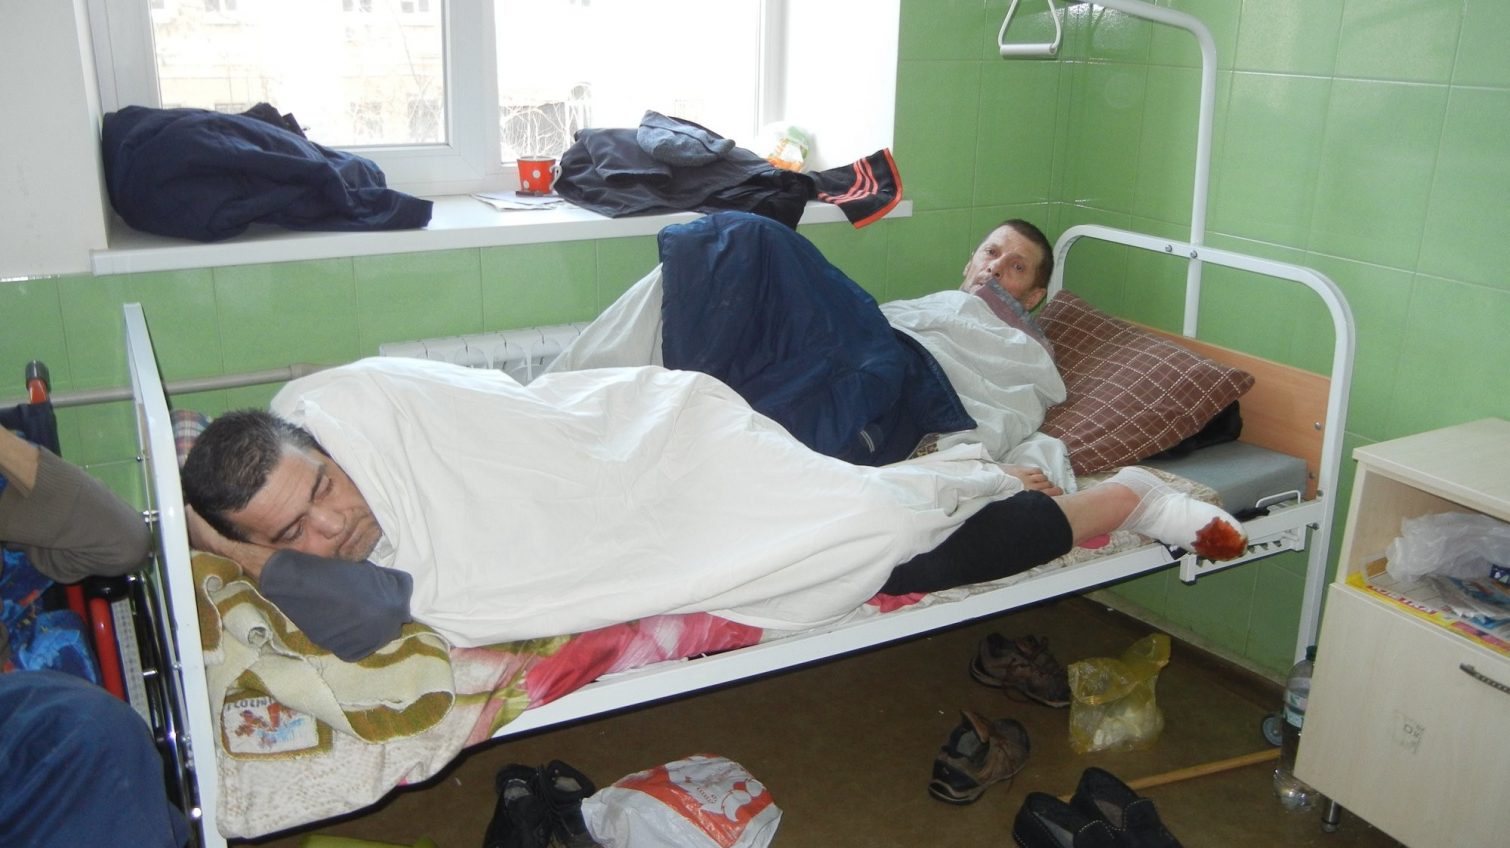 Гнойное отделение Еврейской больницы переполнено: бездомные лежат по двое на одной койке, а некоторые спят под кроватью (фото) «фото»